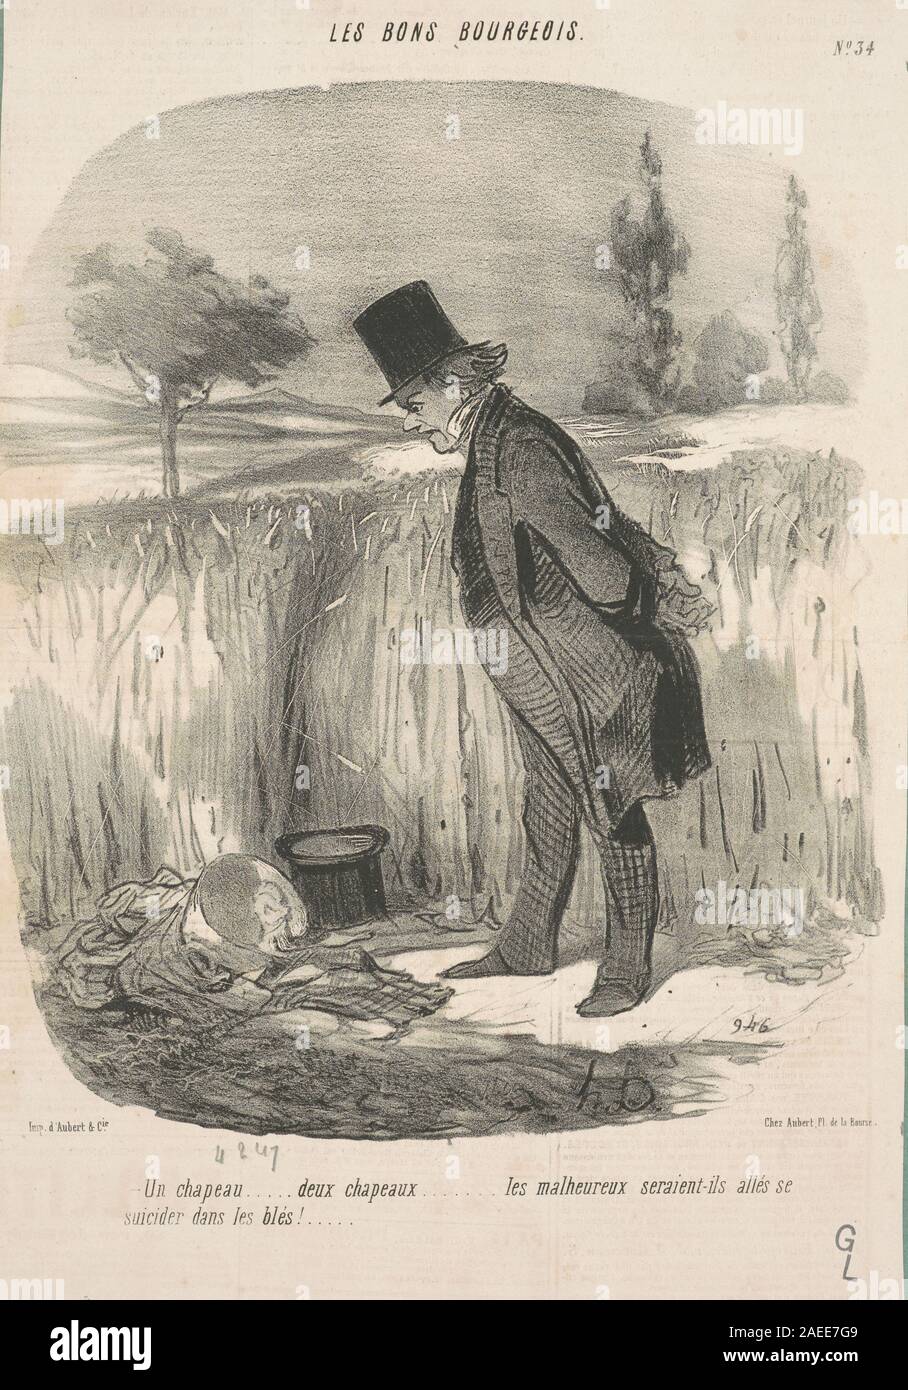 Honoré Daumier, Un chapeau deux chapeaux les malheureux , 19th century Un  chapeau ... deux chapeaux ... les malheureux ...; 19th century date Stock  Photo - Alamy